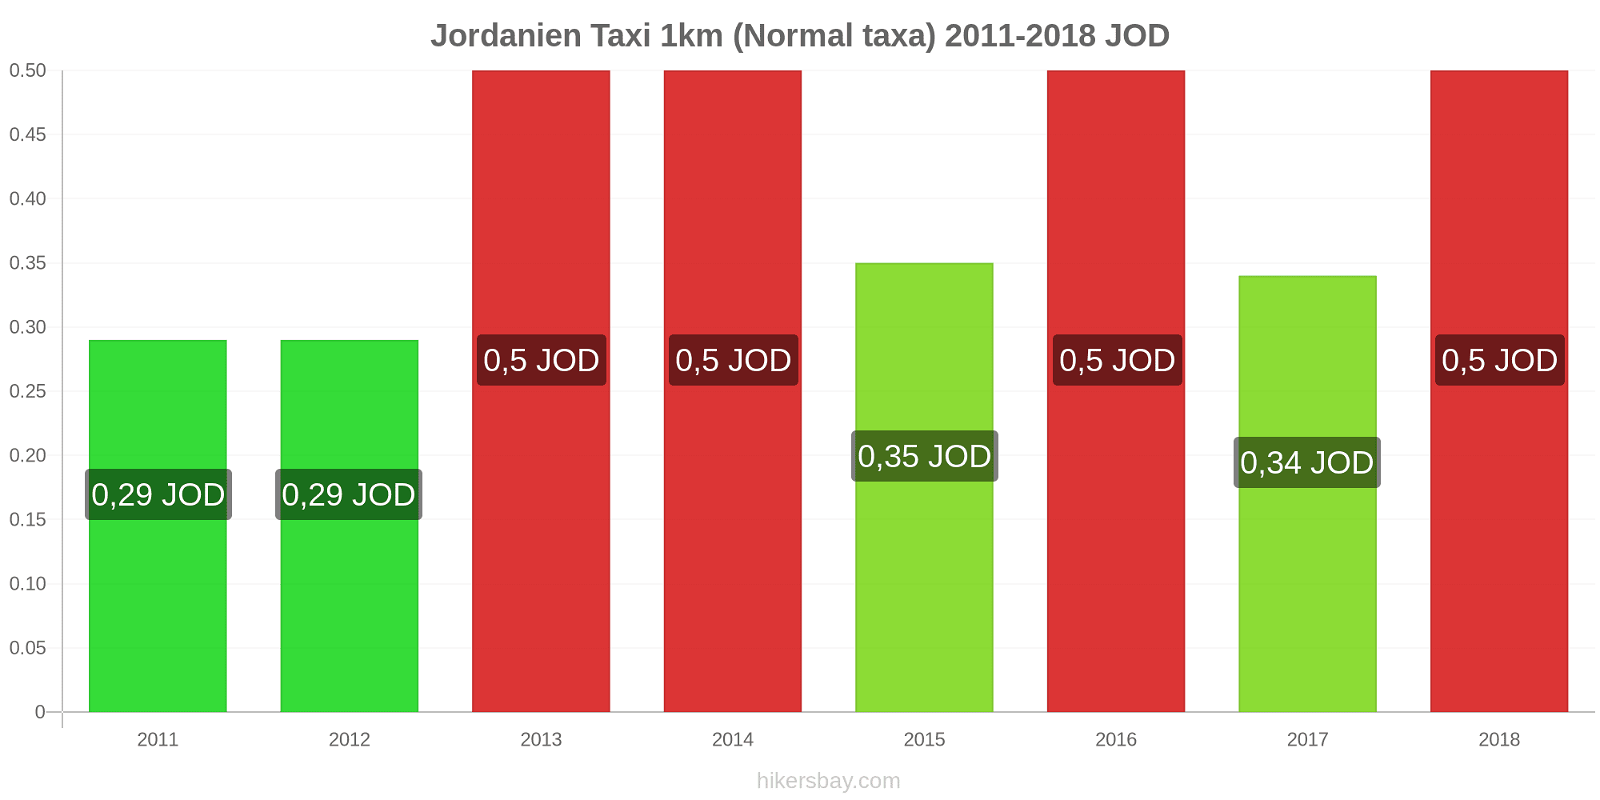 Jordanien prisändringar Taxi 1km (Normal taxa) hikersbay.com